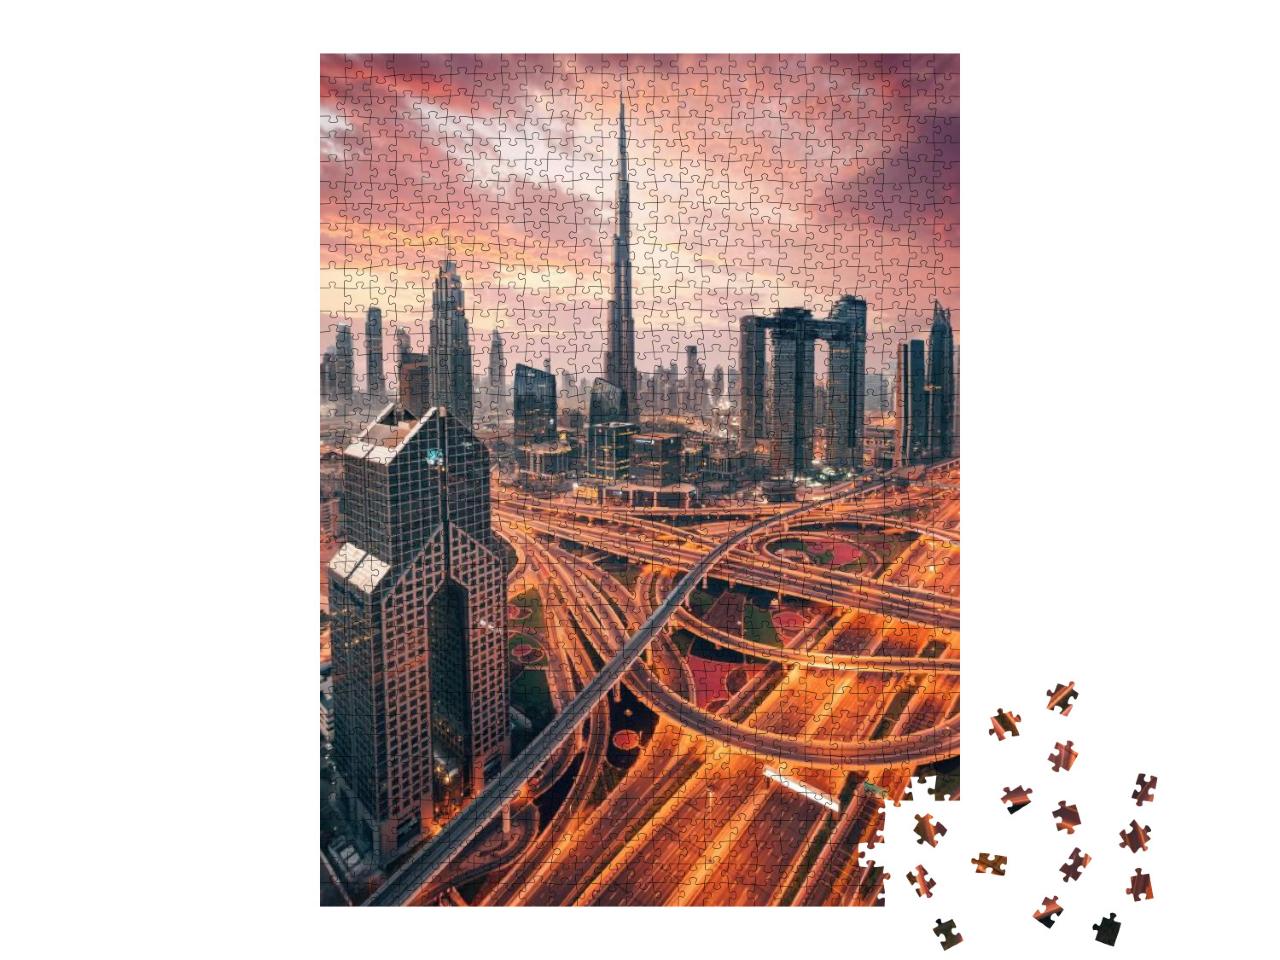 Puzzle 1000 Teile „Wunderschöner Sonnenaufgang über Downtown Dubai“